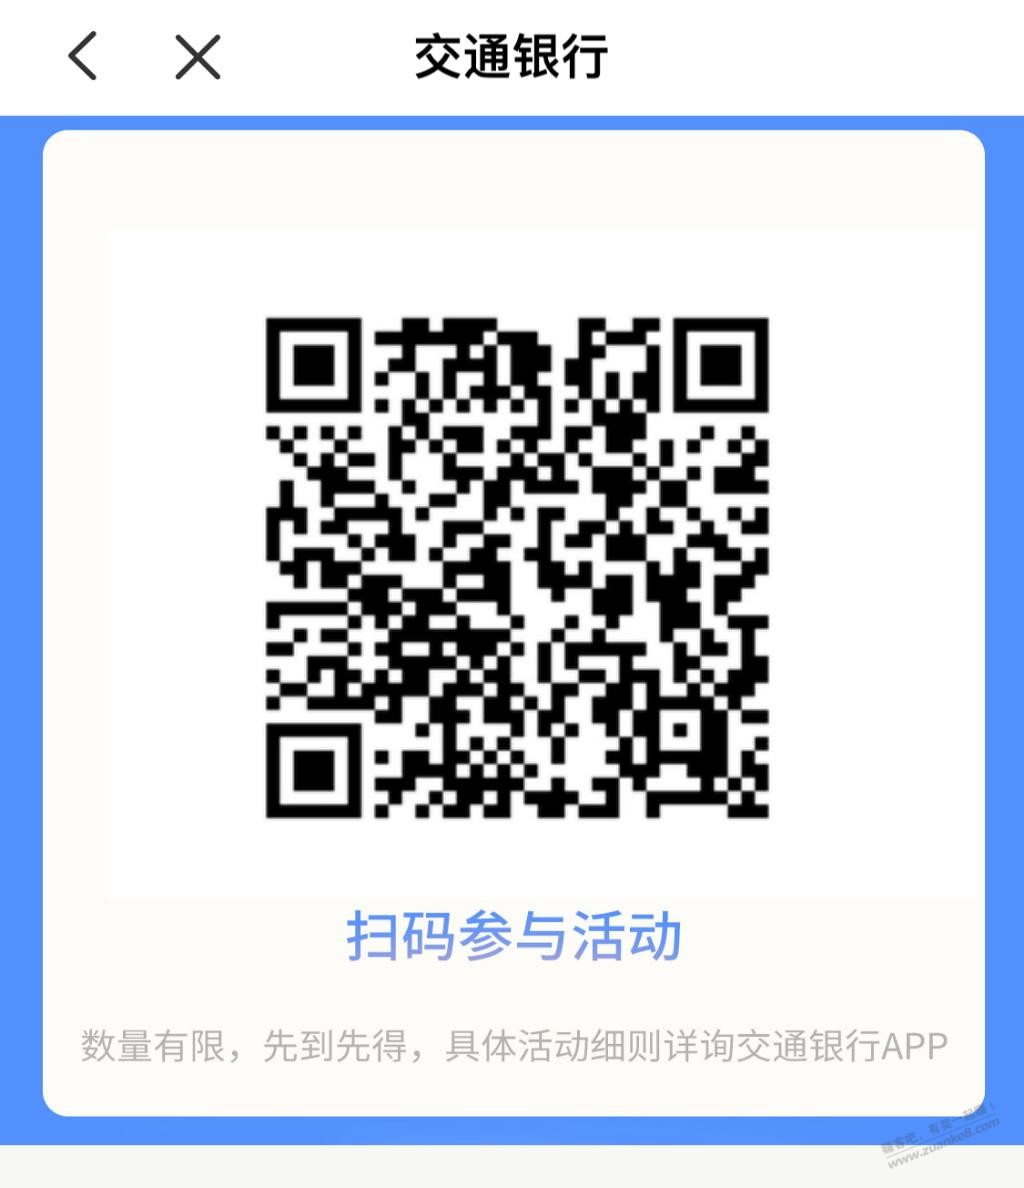 交通银行app扫码开宝箱-惠小助(52huixz.com)